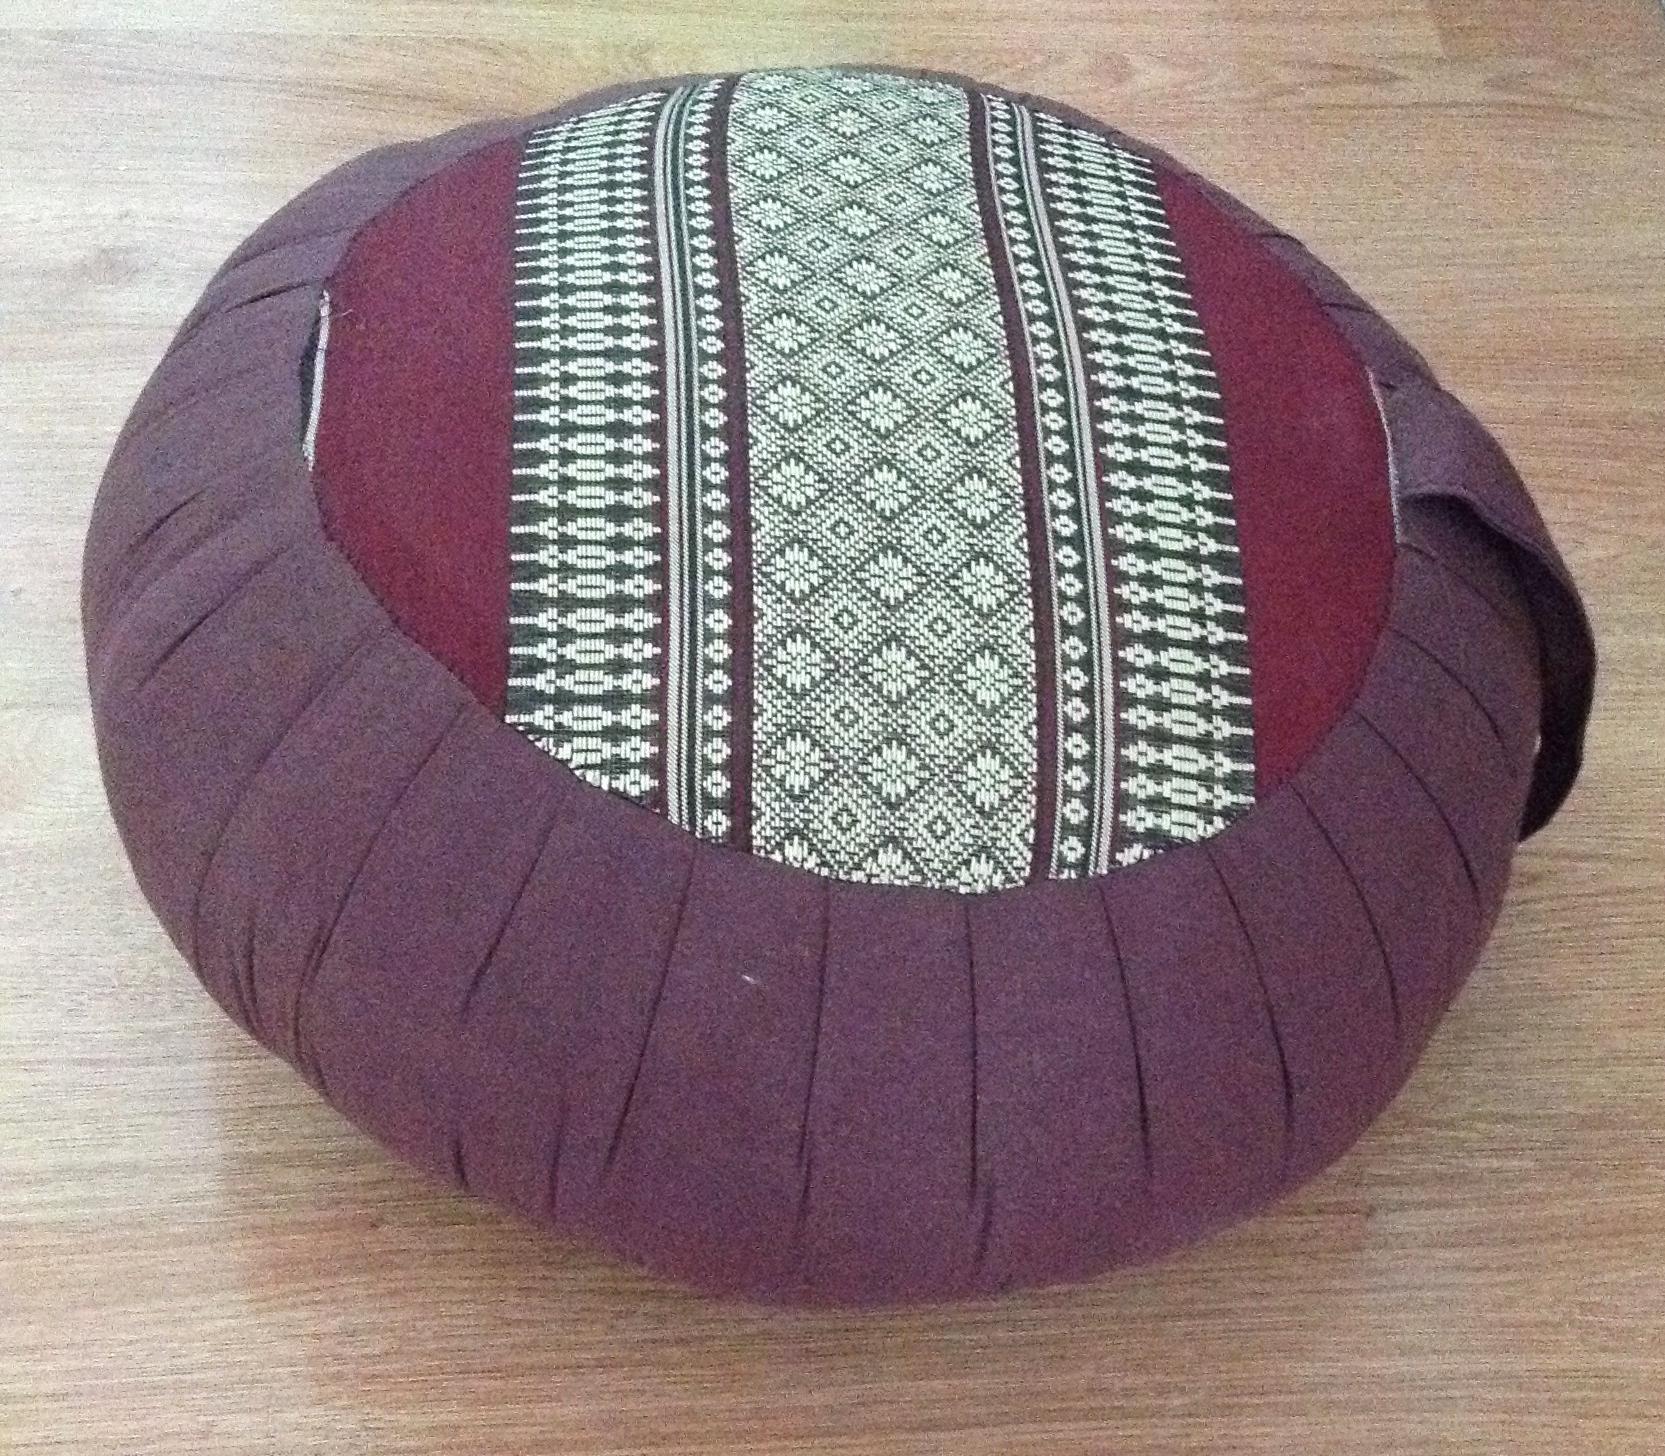 หมอนรองนั่งทรงกลม ขนาด16*6 นิ้ว ผ้าขิดไทยโบราณ นุ่นธรรมชาติ100% Round Zafu Cushion Meditation Cushion Kapok100%